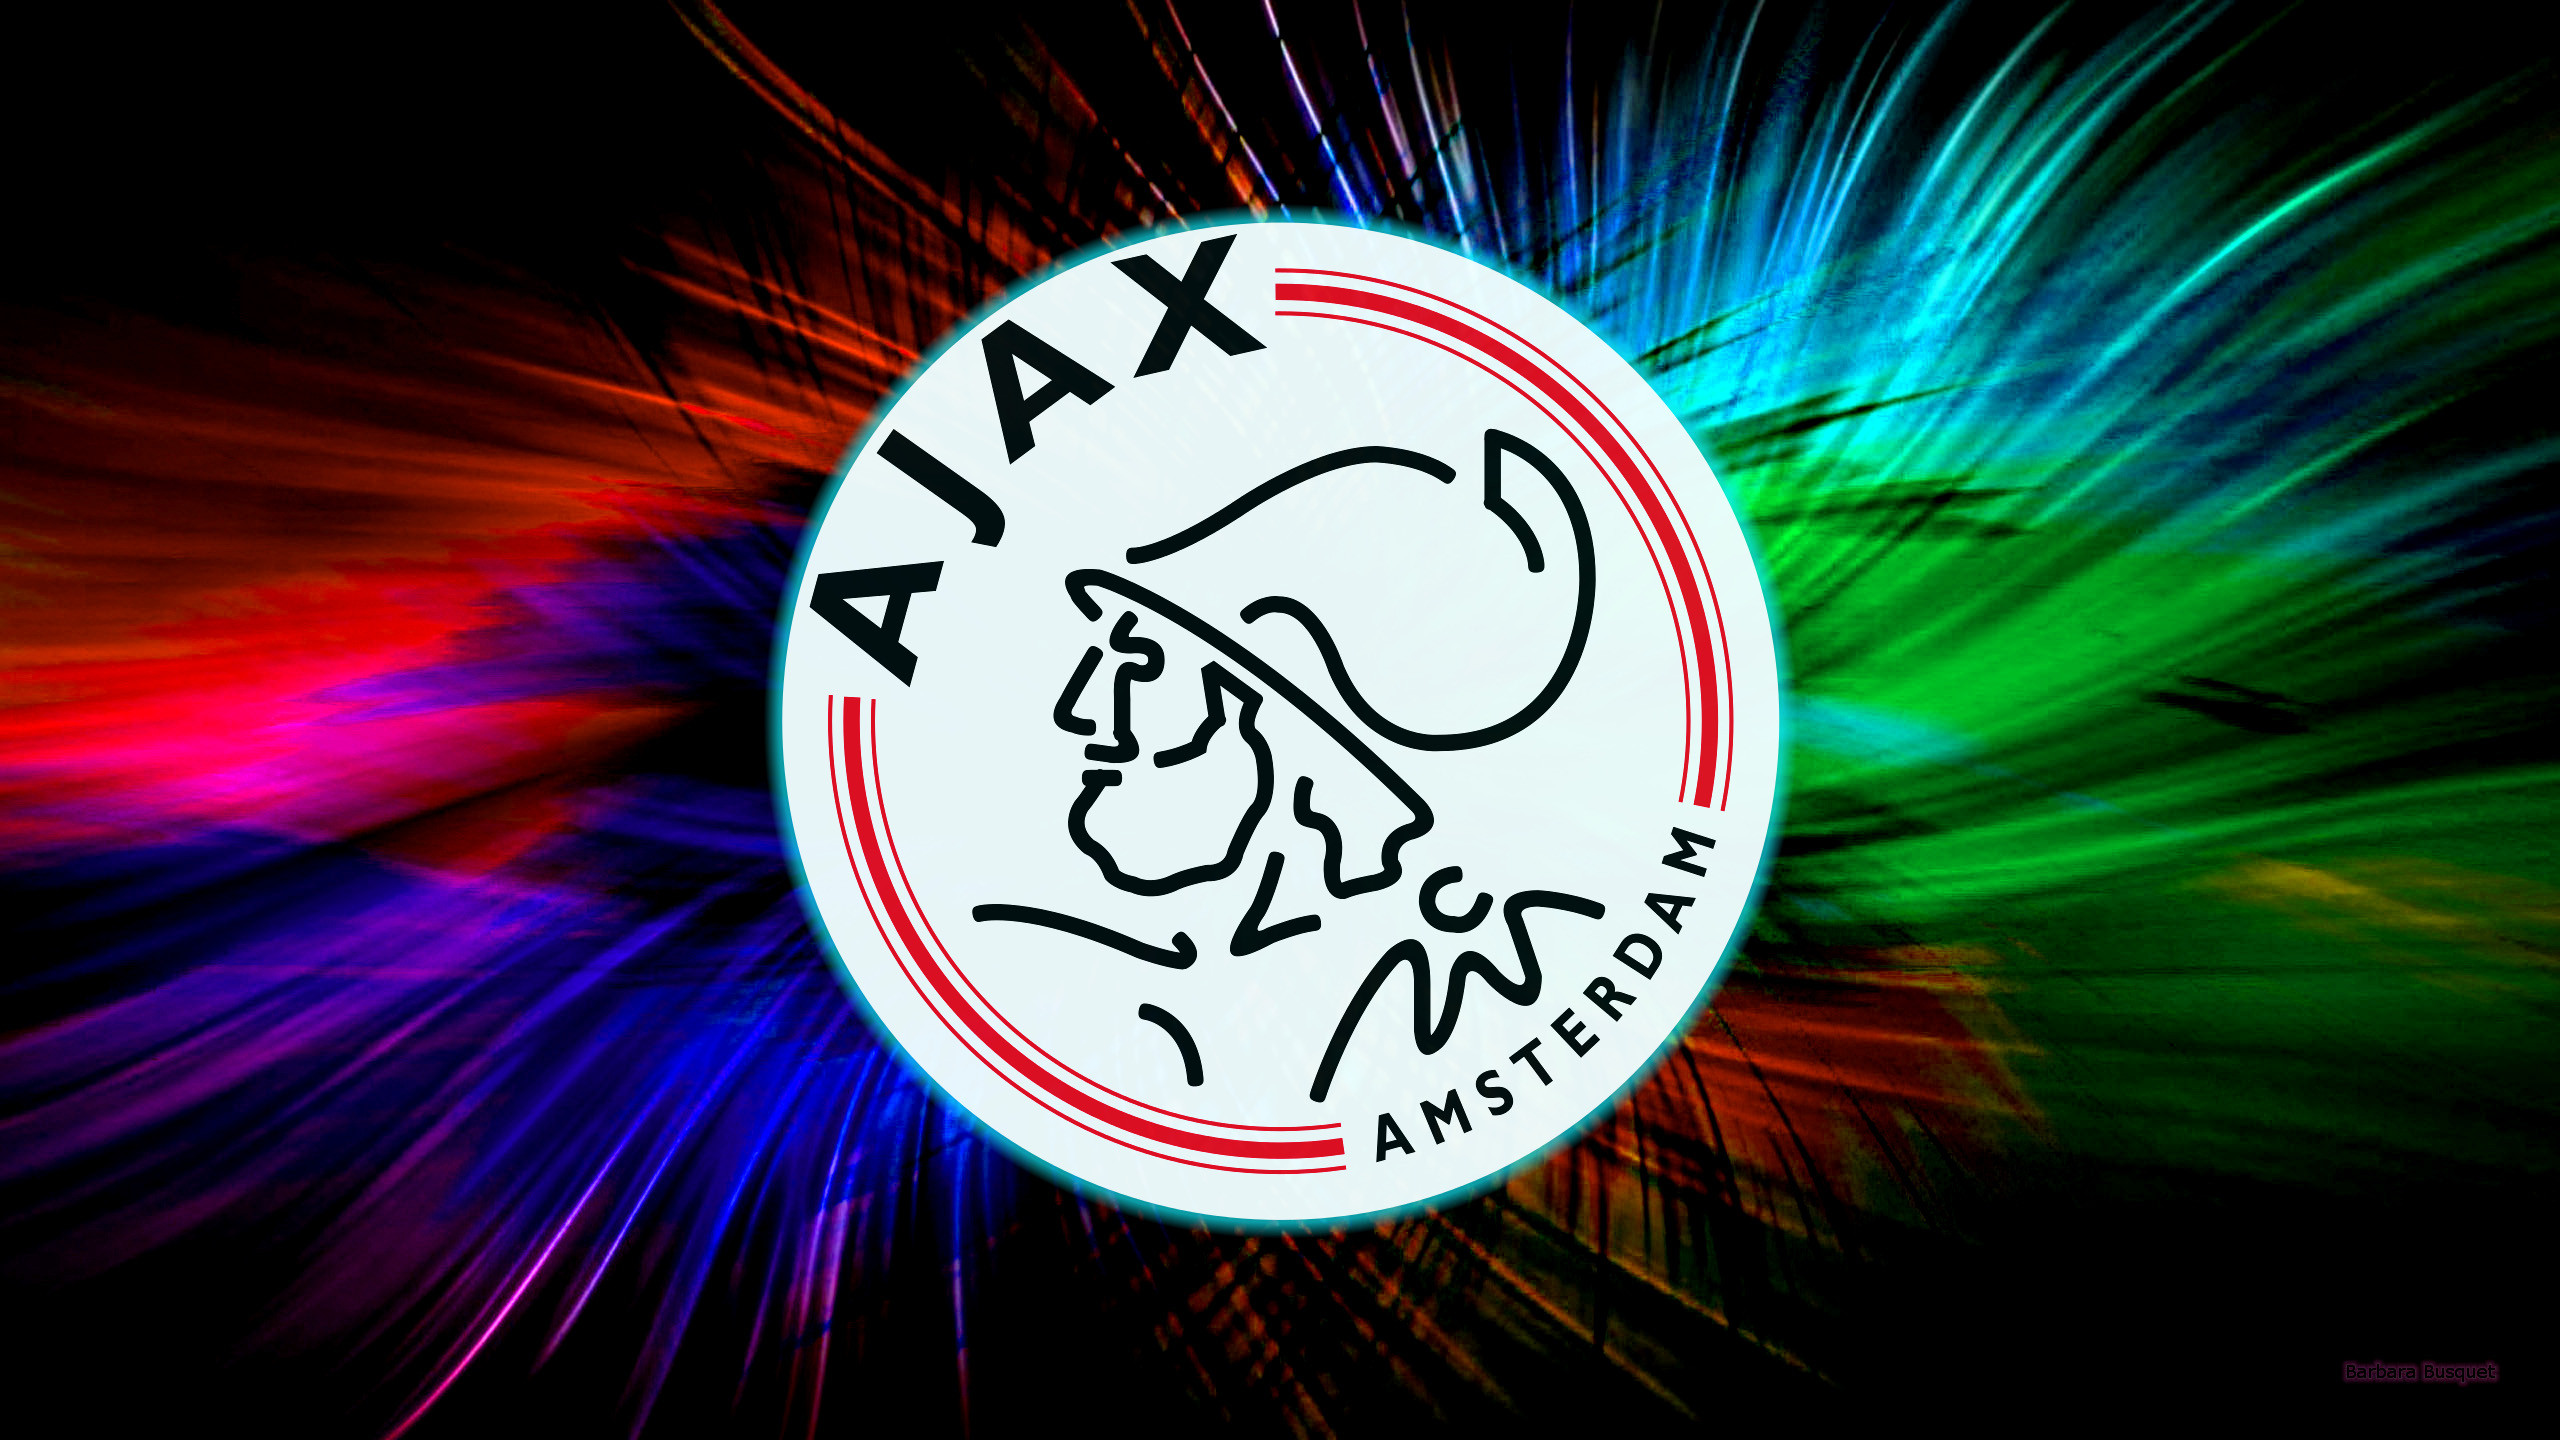 AFC Ajax Picture